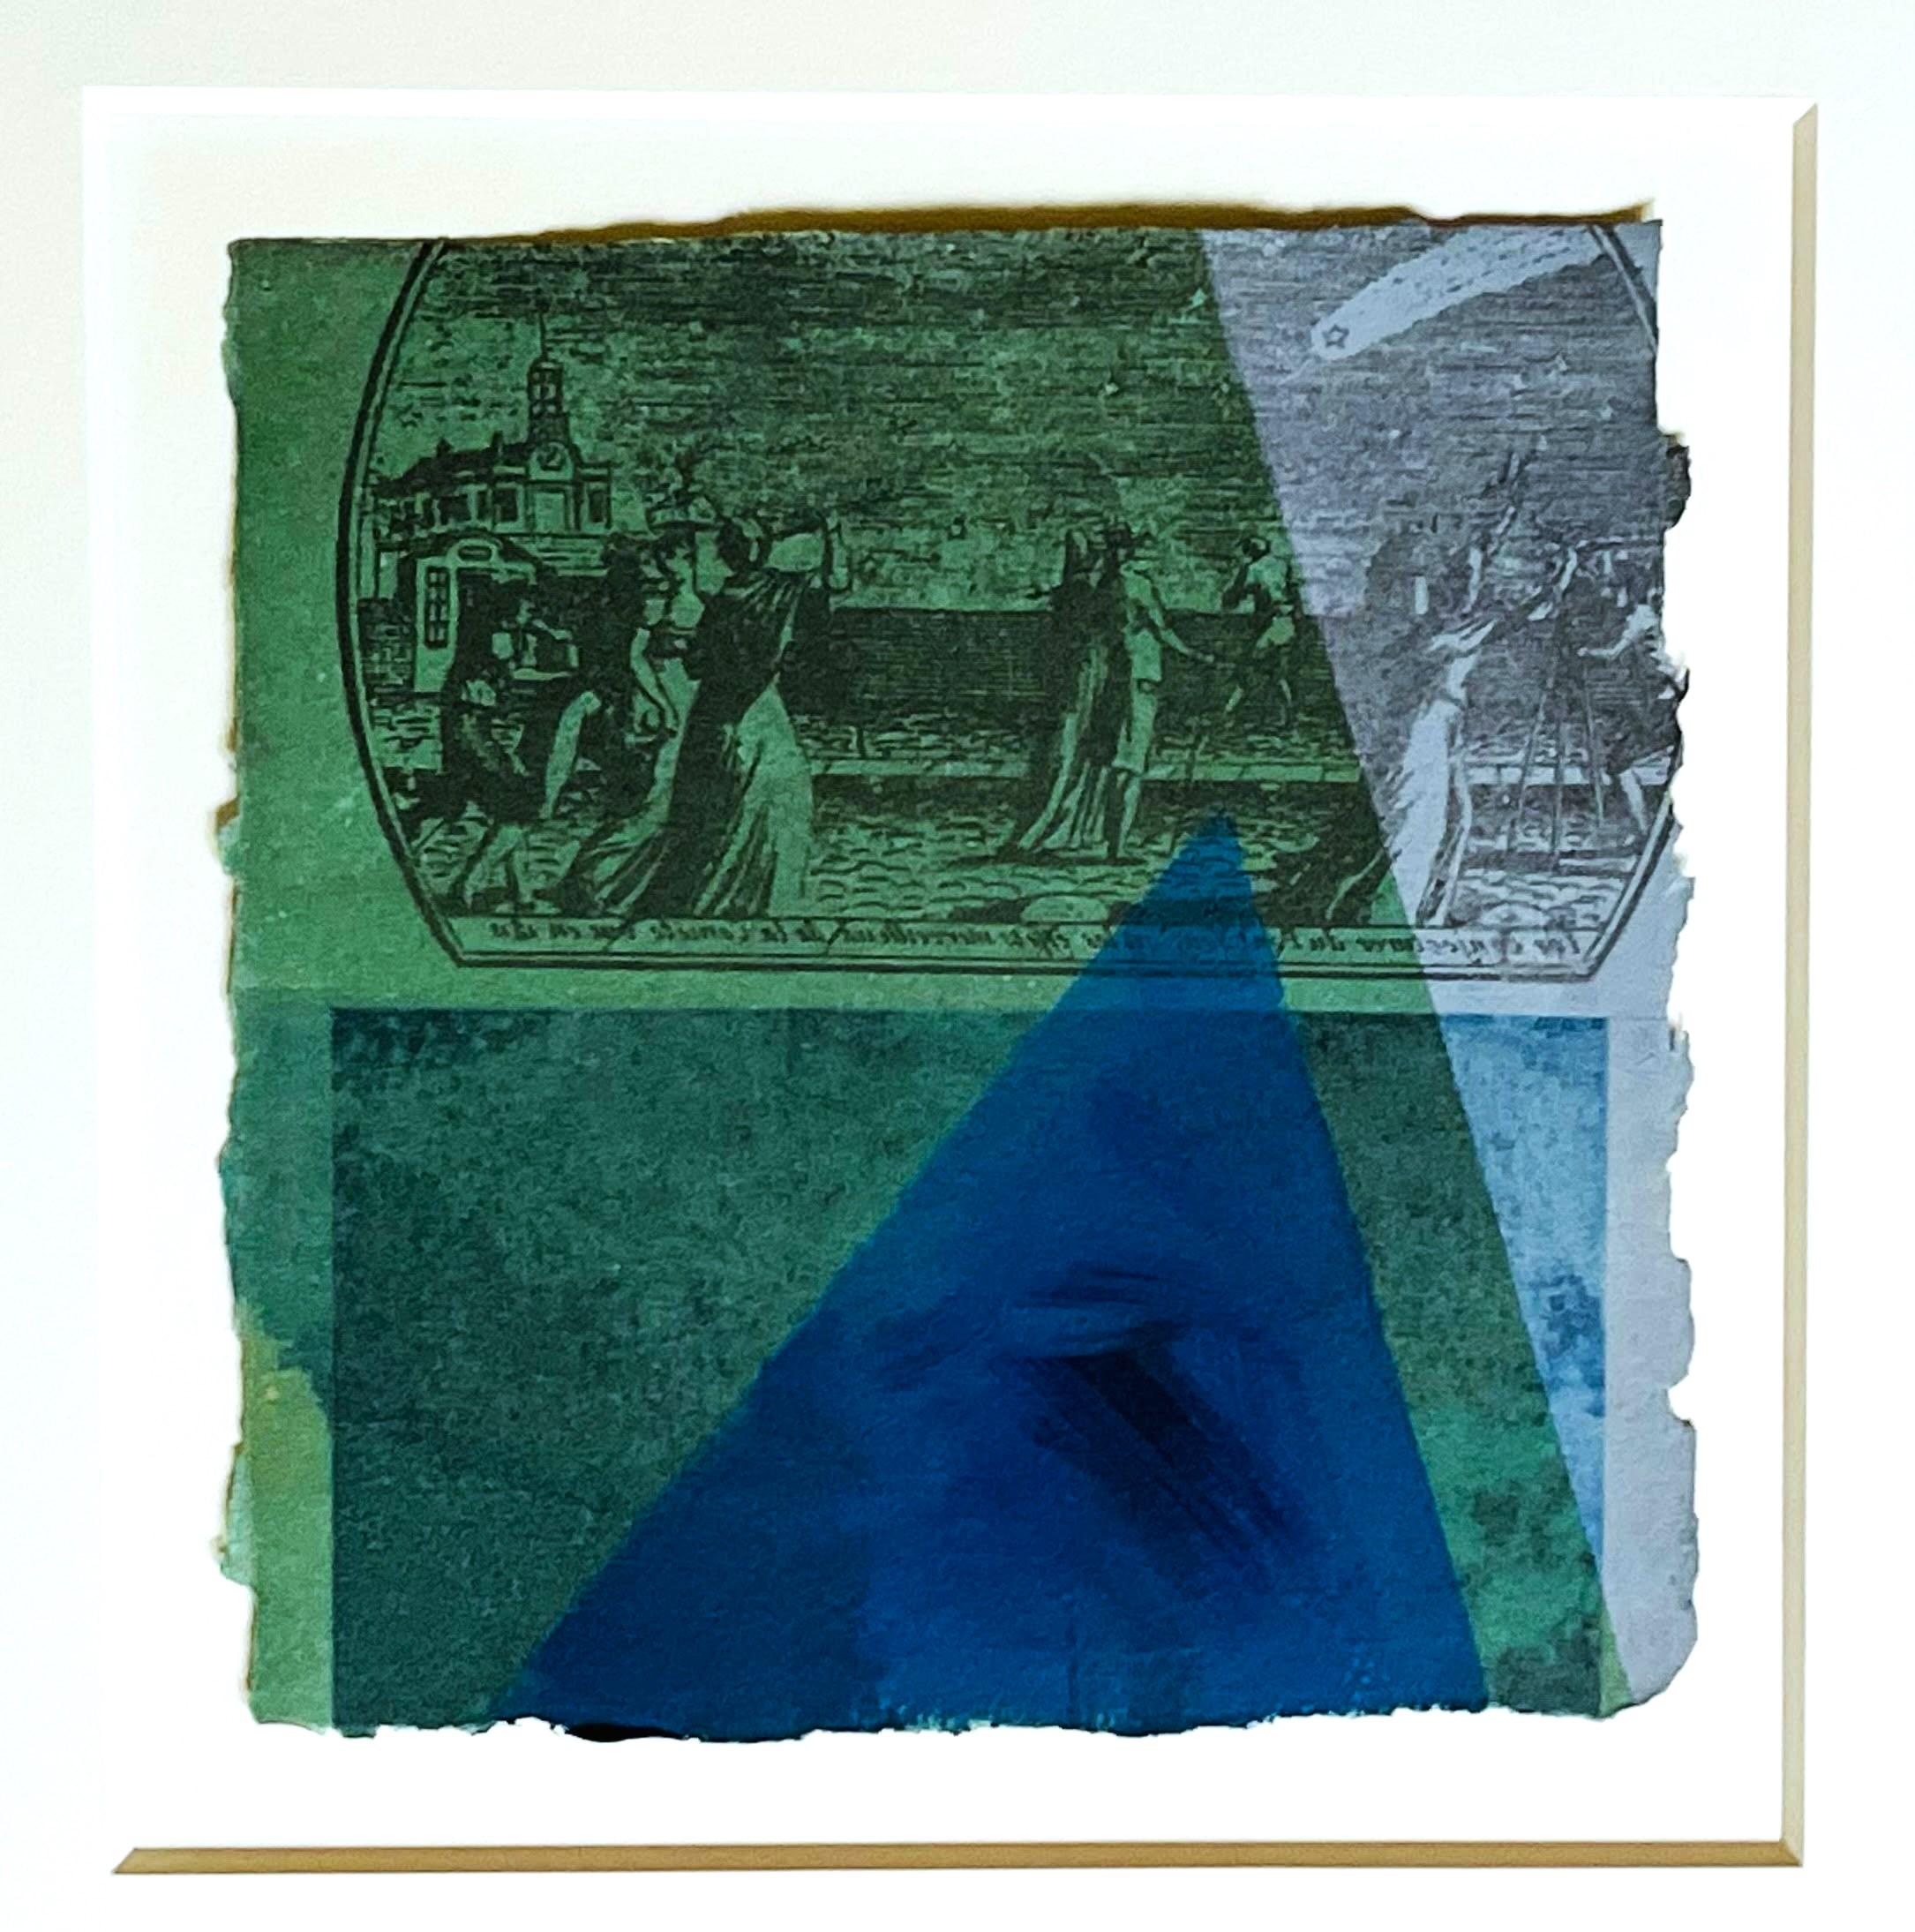 Robert Rauschenberg
'Snowflake Crime XIX', aus der ACE Gallery Collection, 1981
Lösemitteltransfer, Acryl und Stoffcollage auf handgeschöpftem Papier mit geriffelten Kanten
Signiert und datiert '81 in permanentem Marker auf der Rückseite; trägt eine